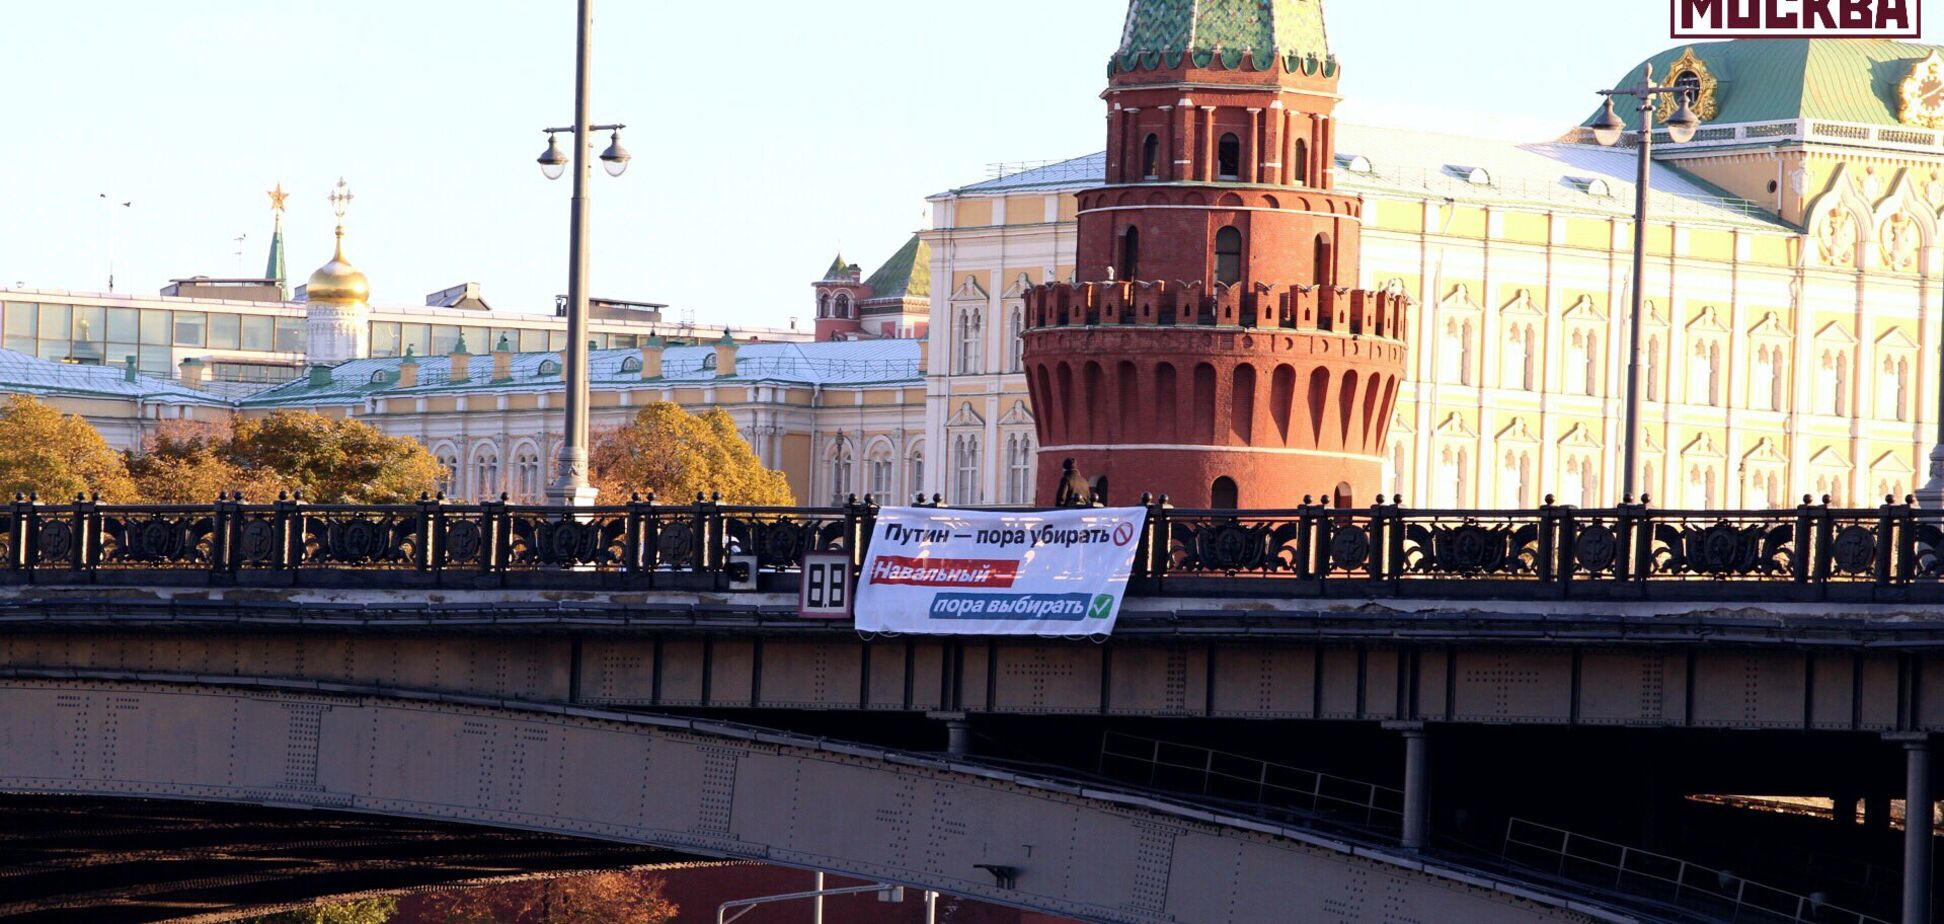 'Час прибирати': в центрі Москви з'явився зухвалий банер проти Путіна